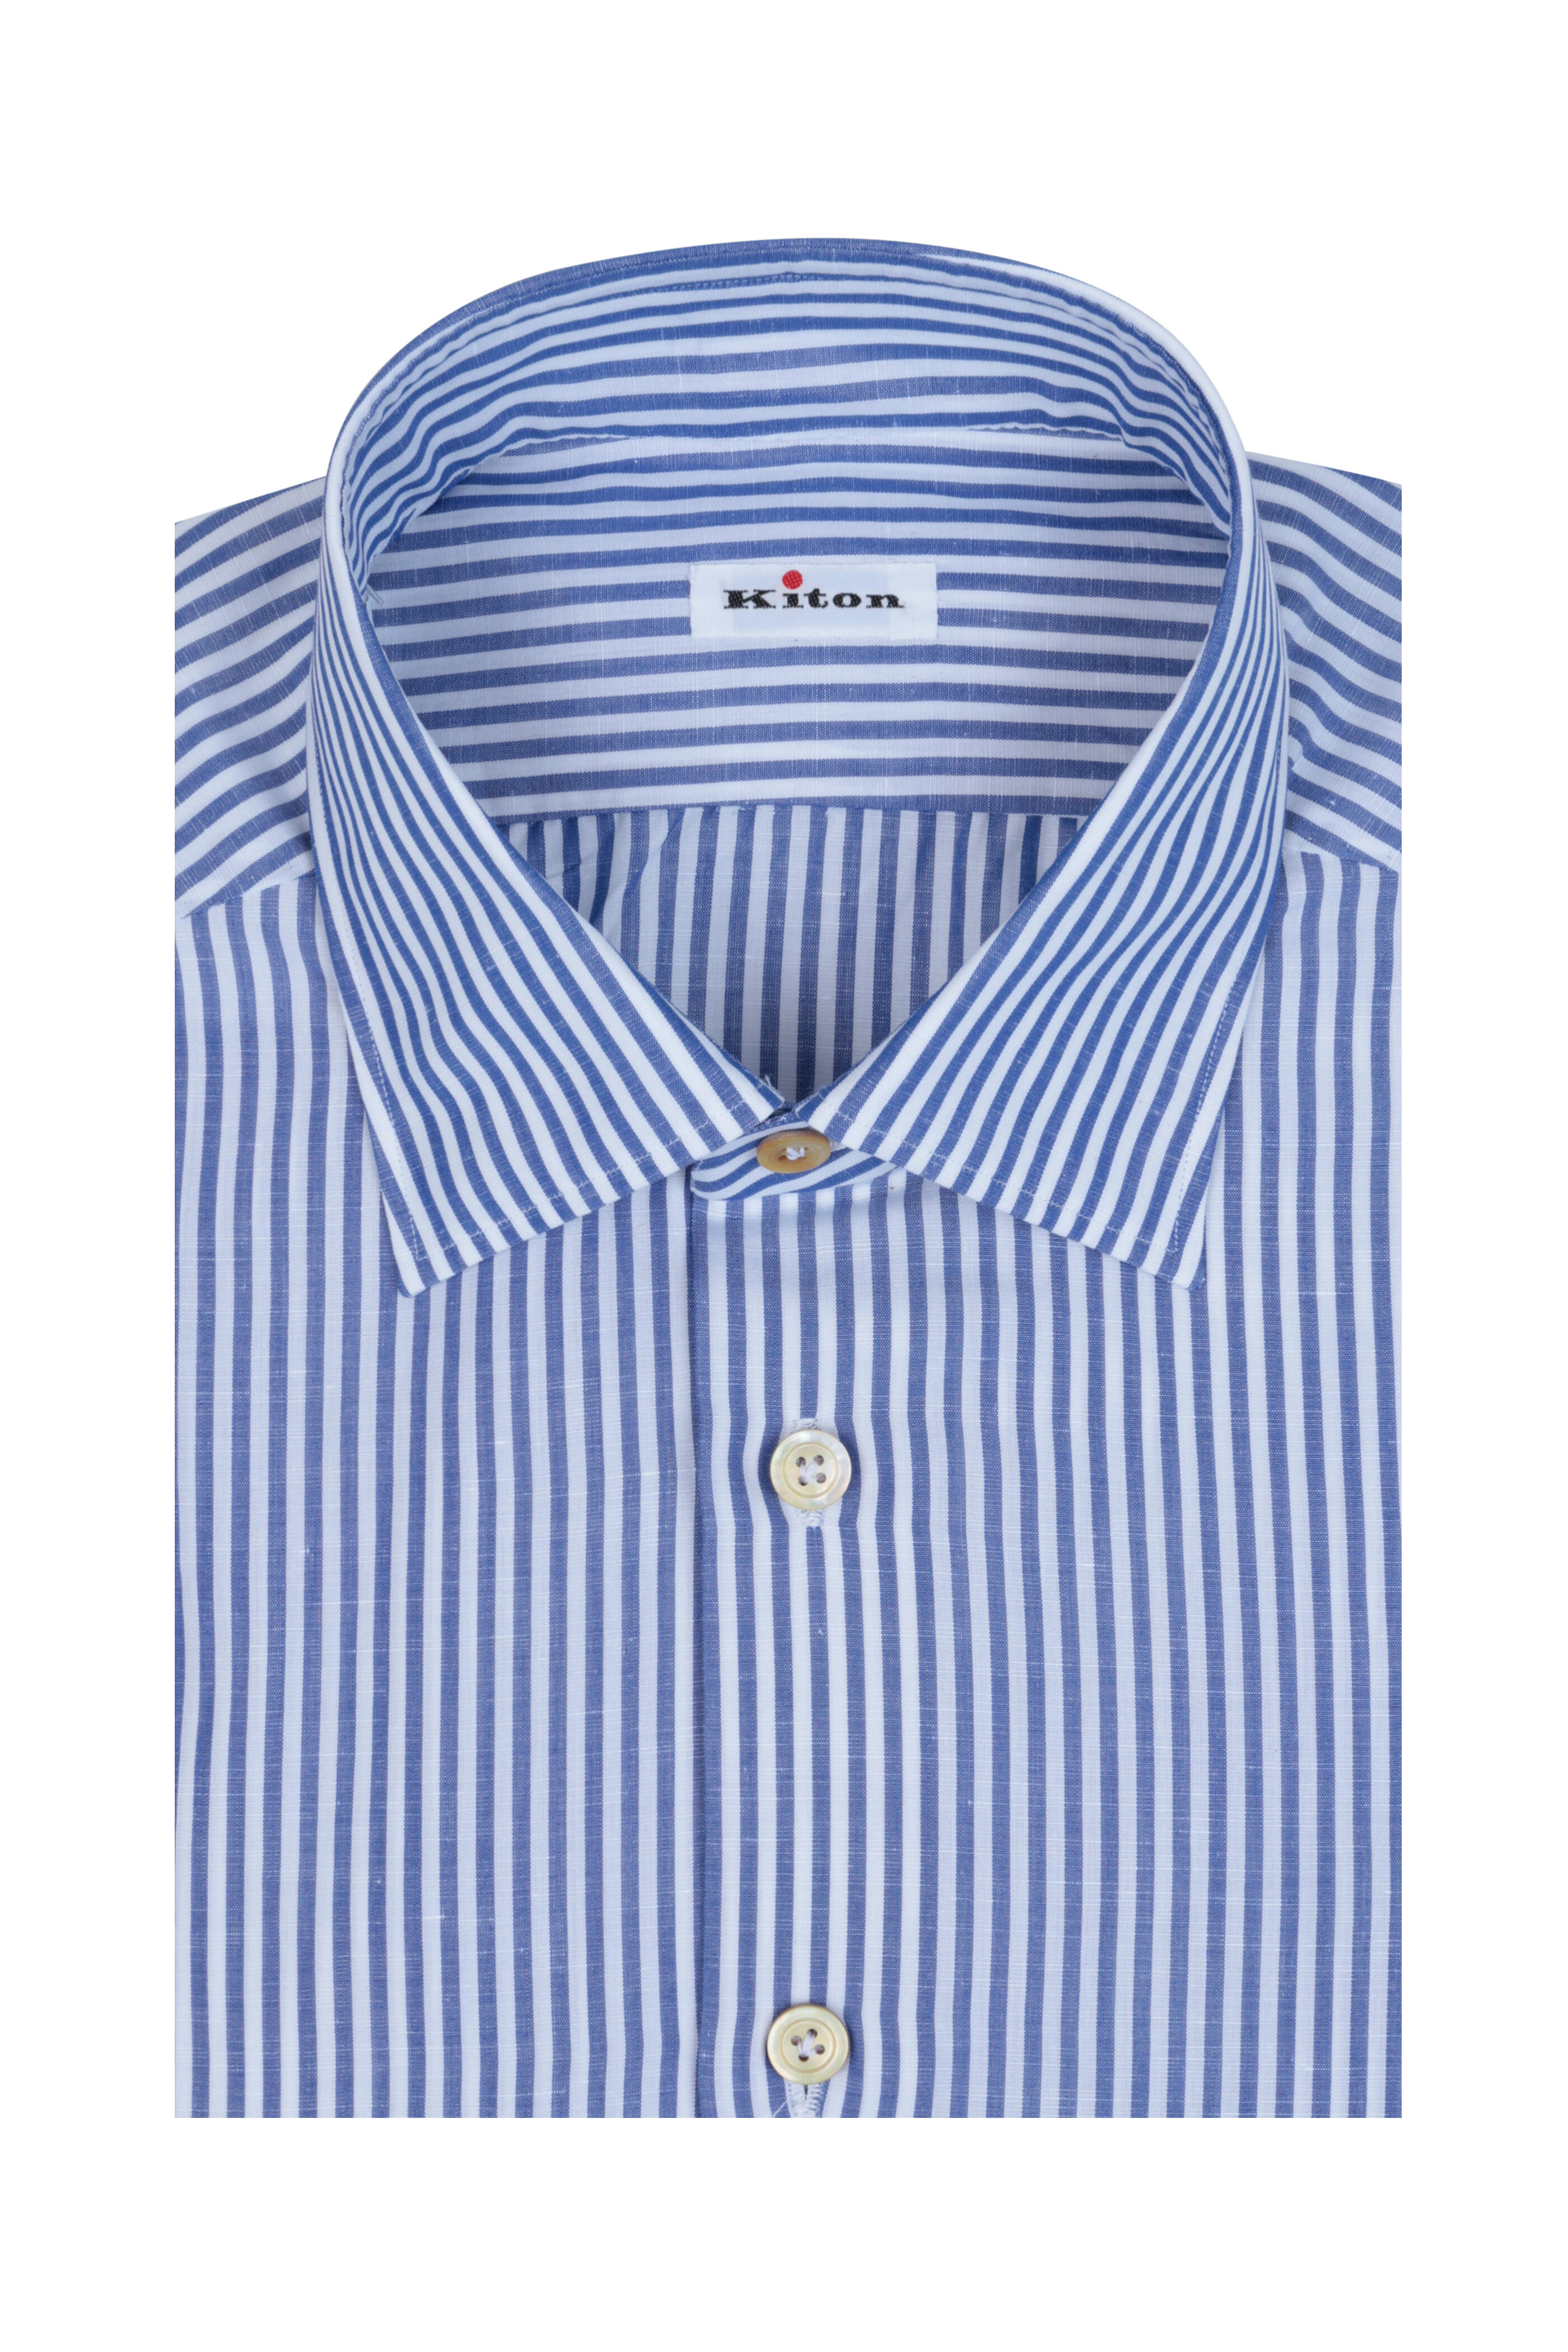 Kiton classic collar shirt - Neutrals